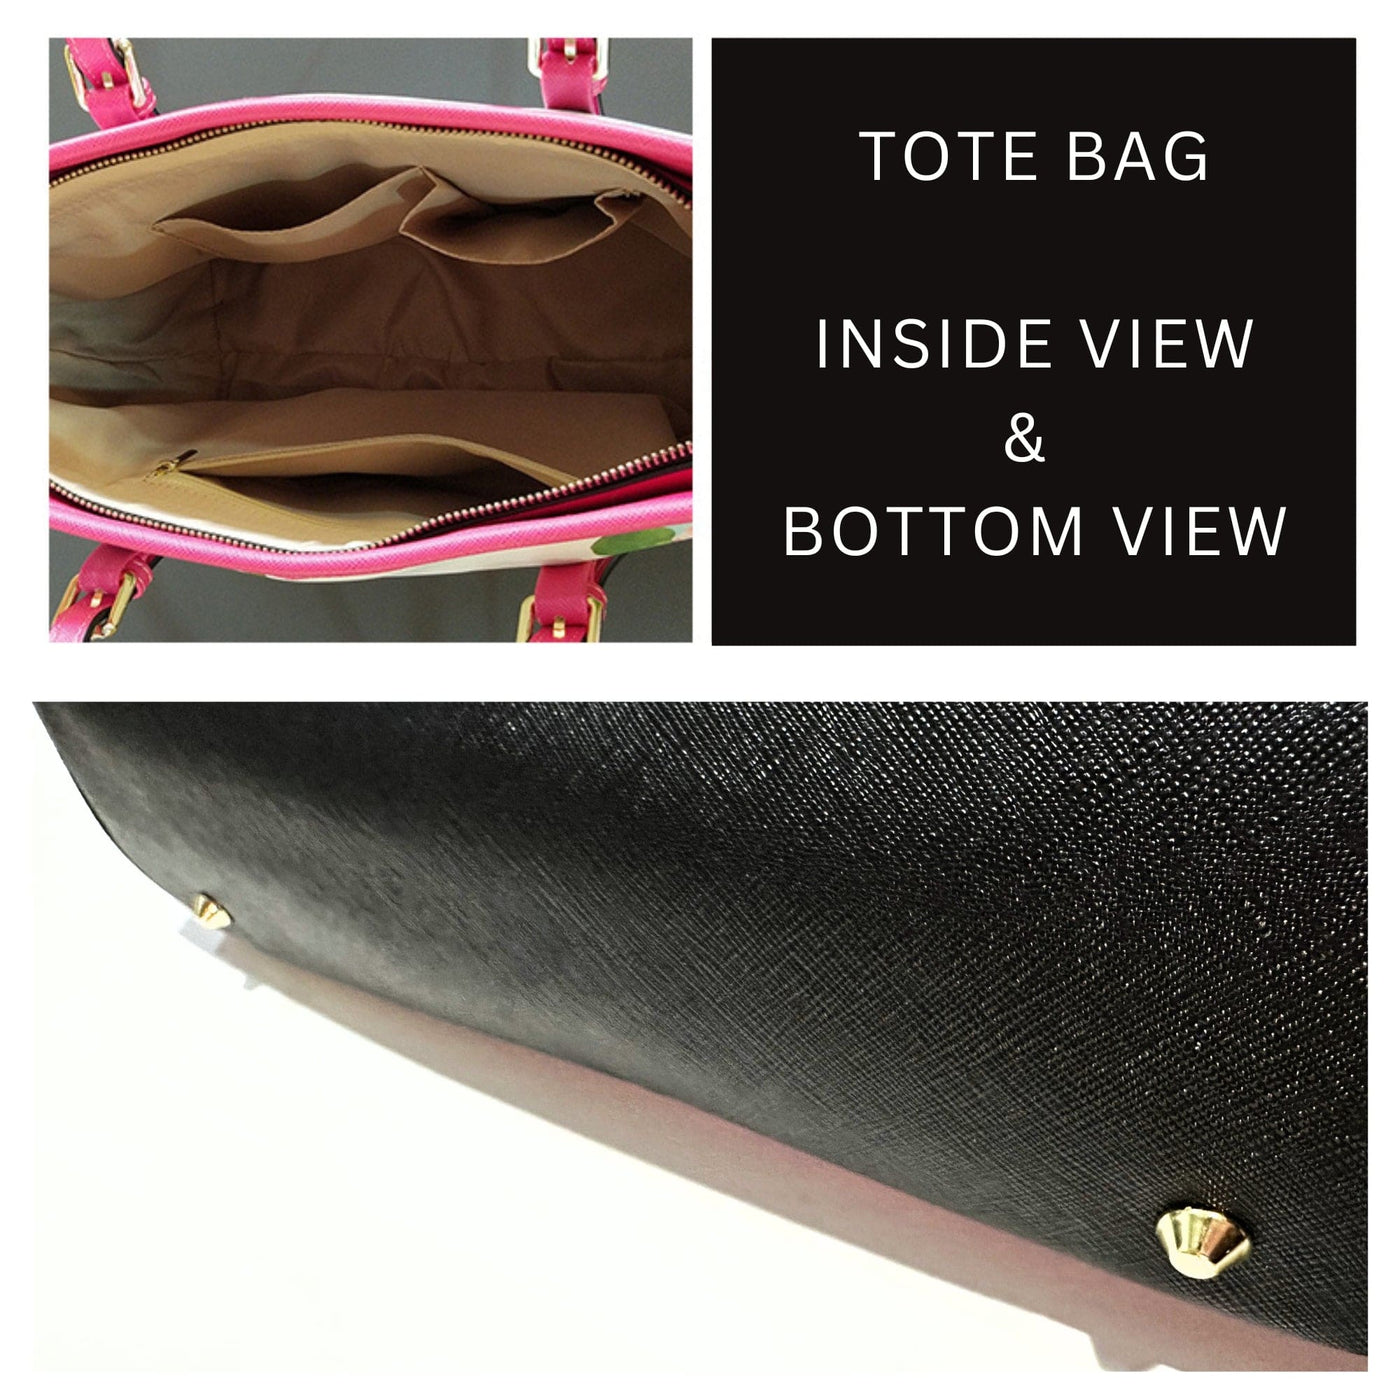 Large Leather Tote Shoulder Bag - Rainbow Radial-v Handbag - Bags | Leather